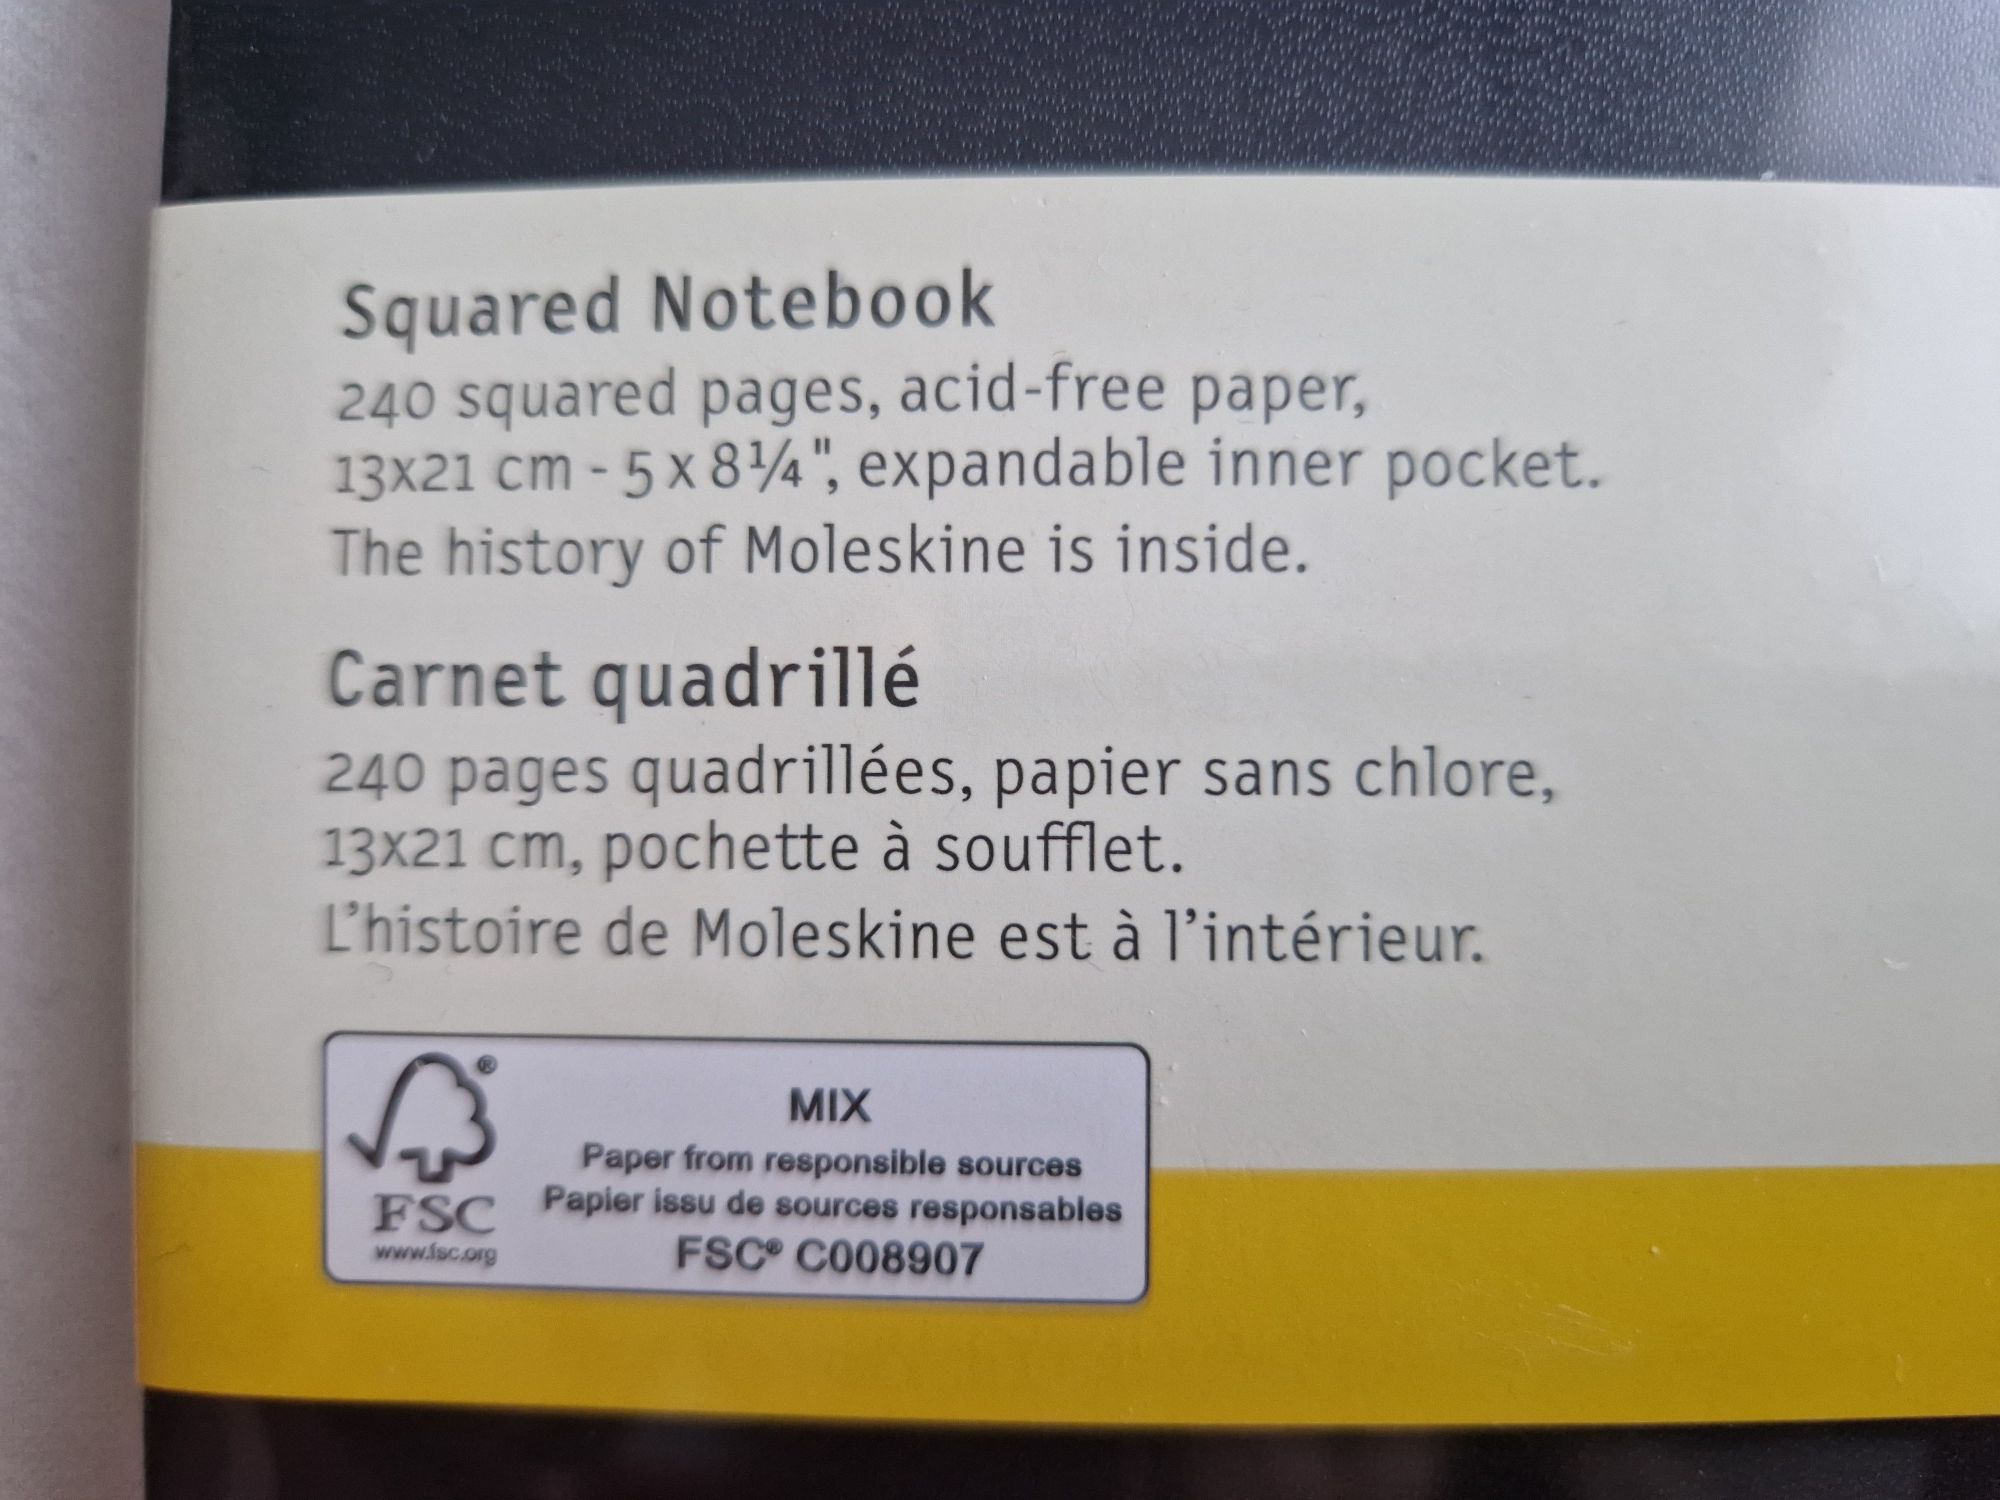 Zafoliowany notes Moleskine Classic L (13x21cm) w kratkę, twarda opraw